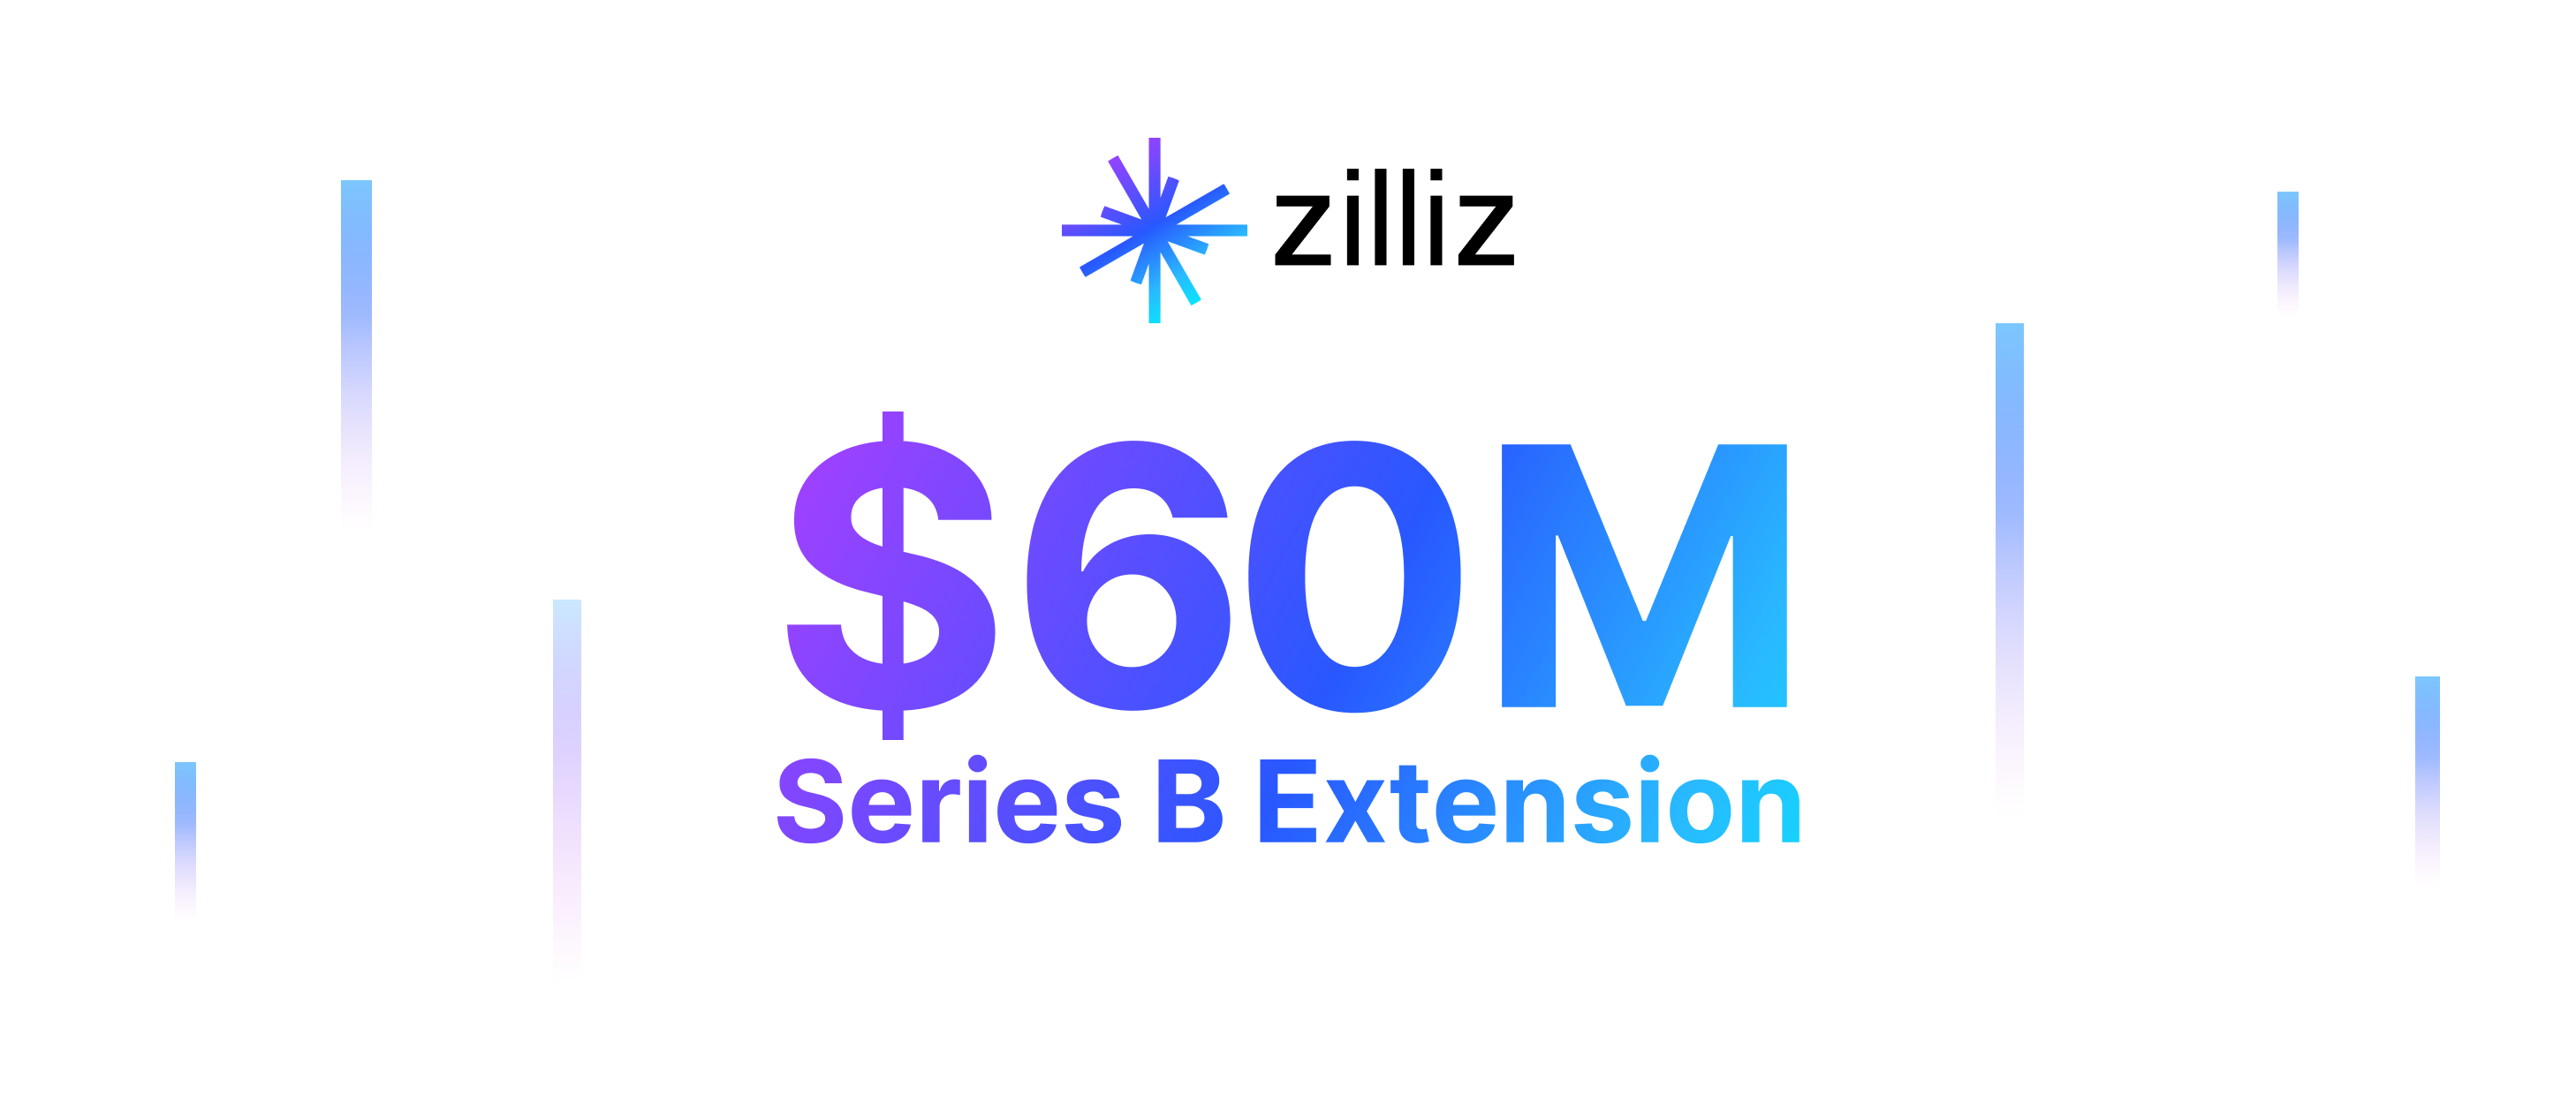 向量数据库公司 Zilliz 完成 6000 万美元 B+ 轮融资